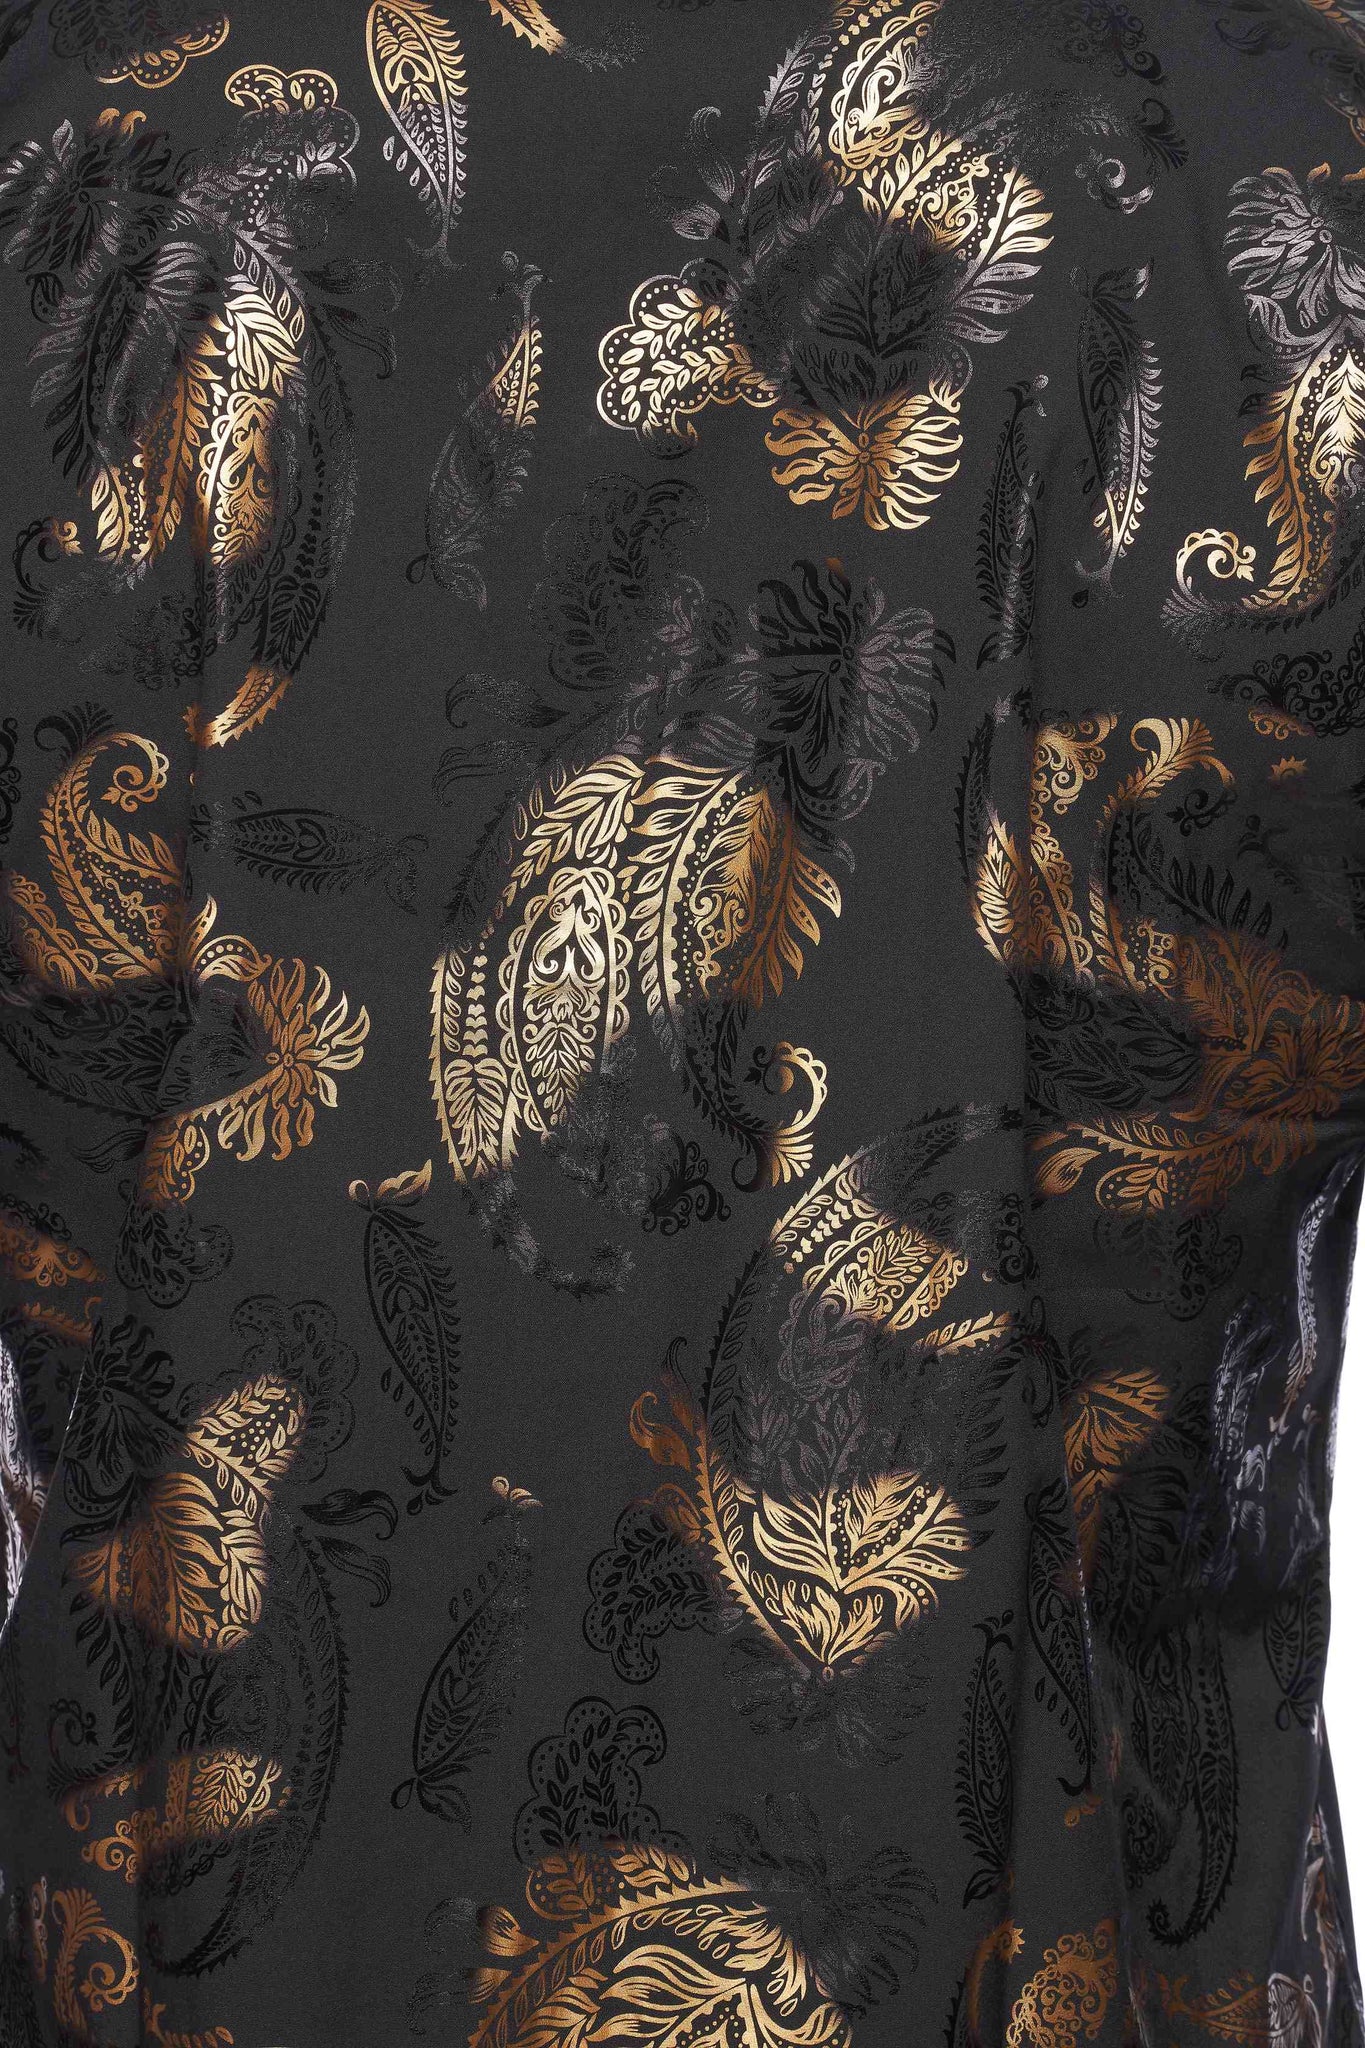 Mens Luxury Brand Printed Silk Like Shirts-HLS2002L-527